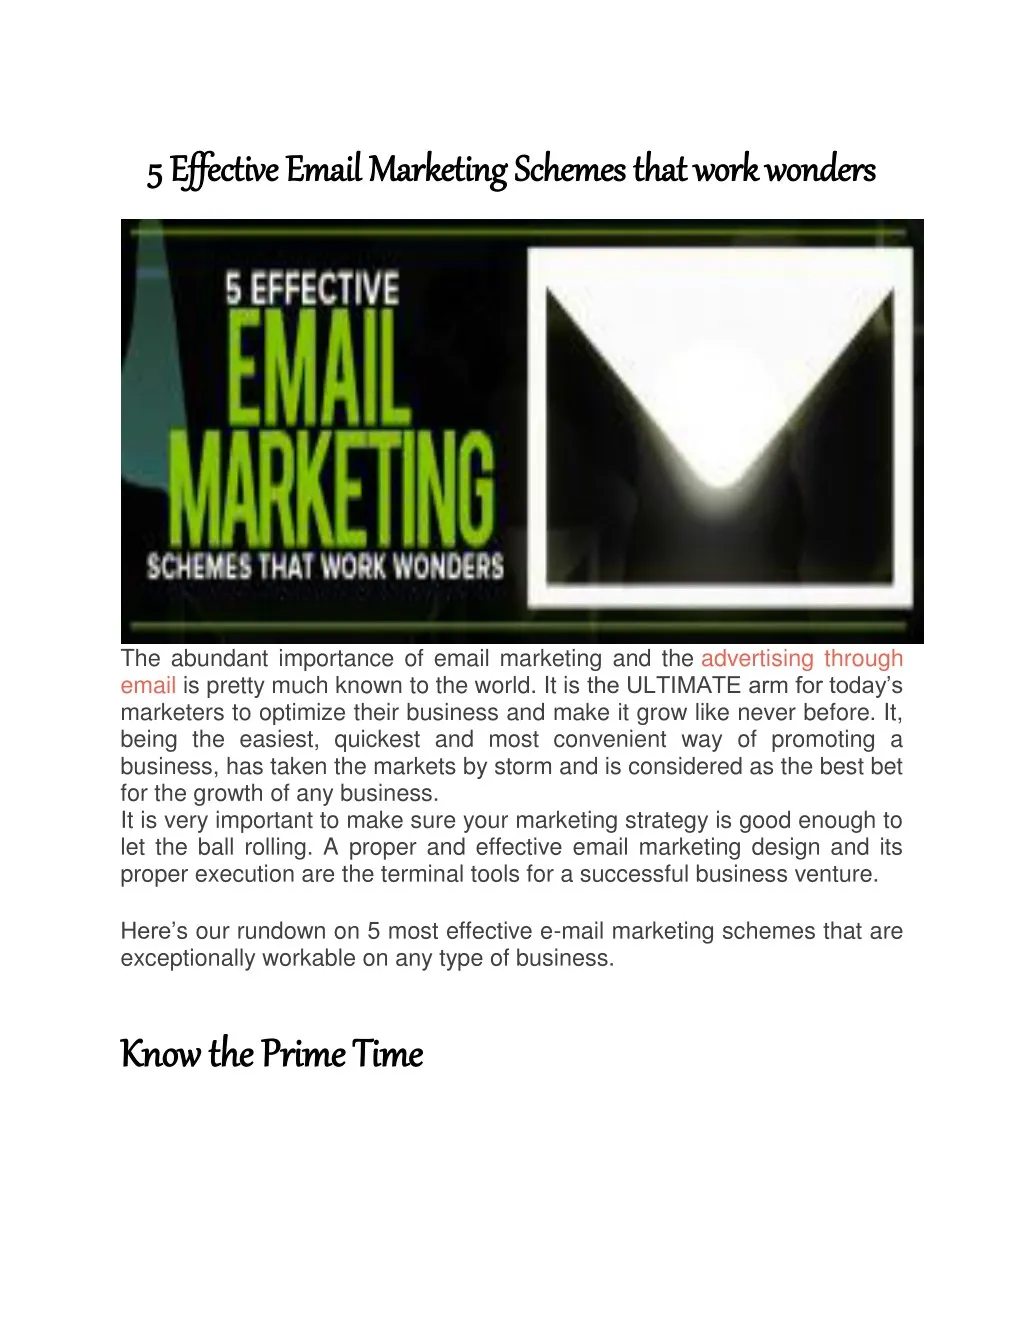 5 effective email marketing schemes that work